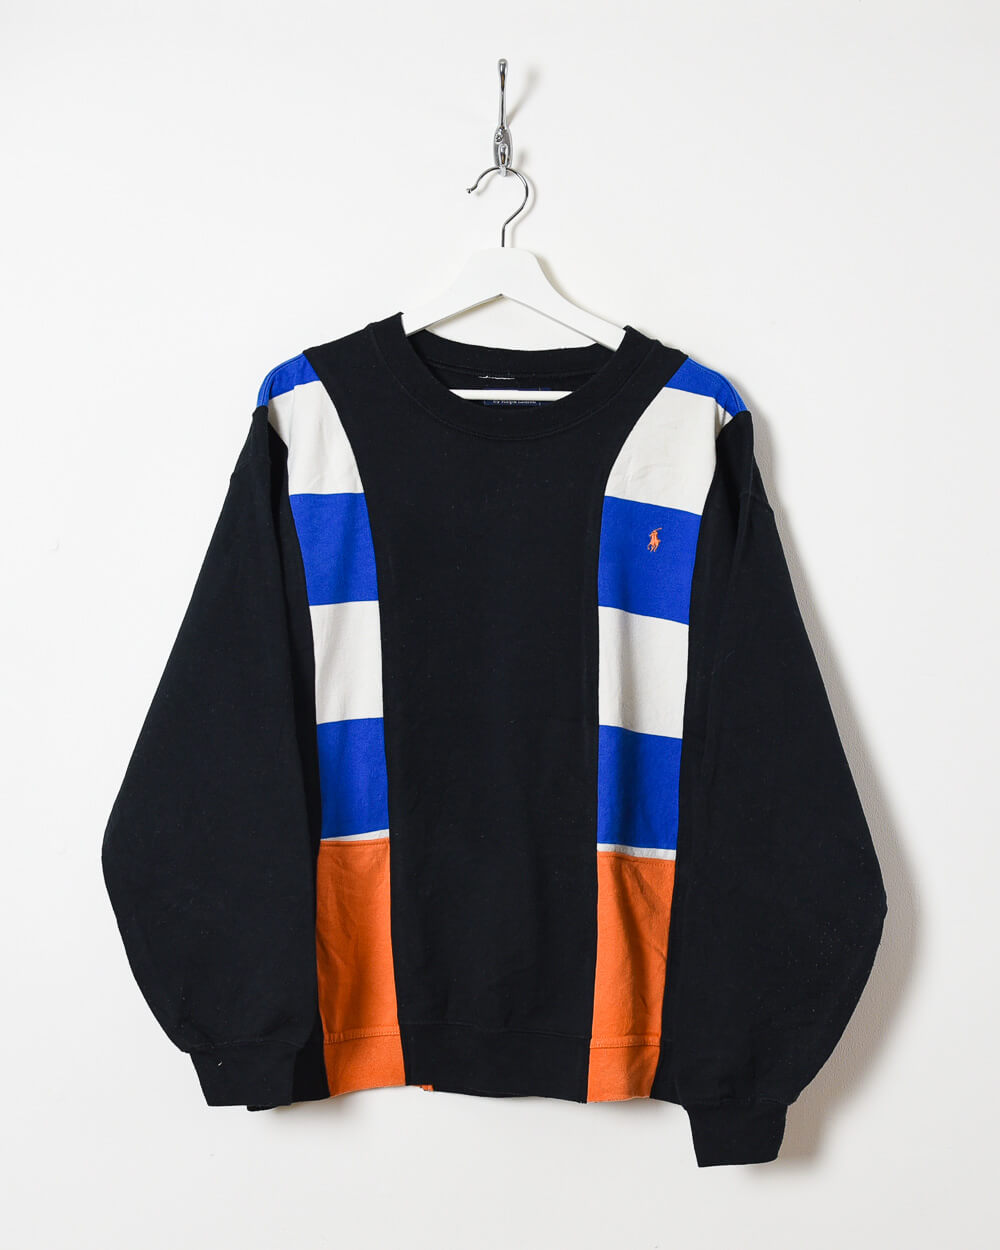 Black Ralph Lauren Sweatshirt - Medium